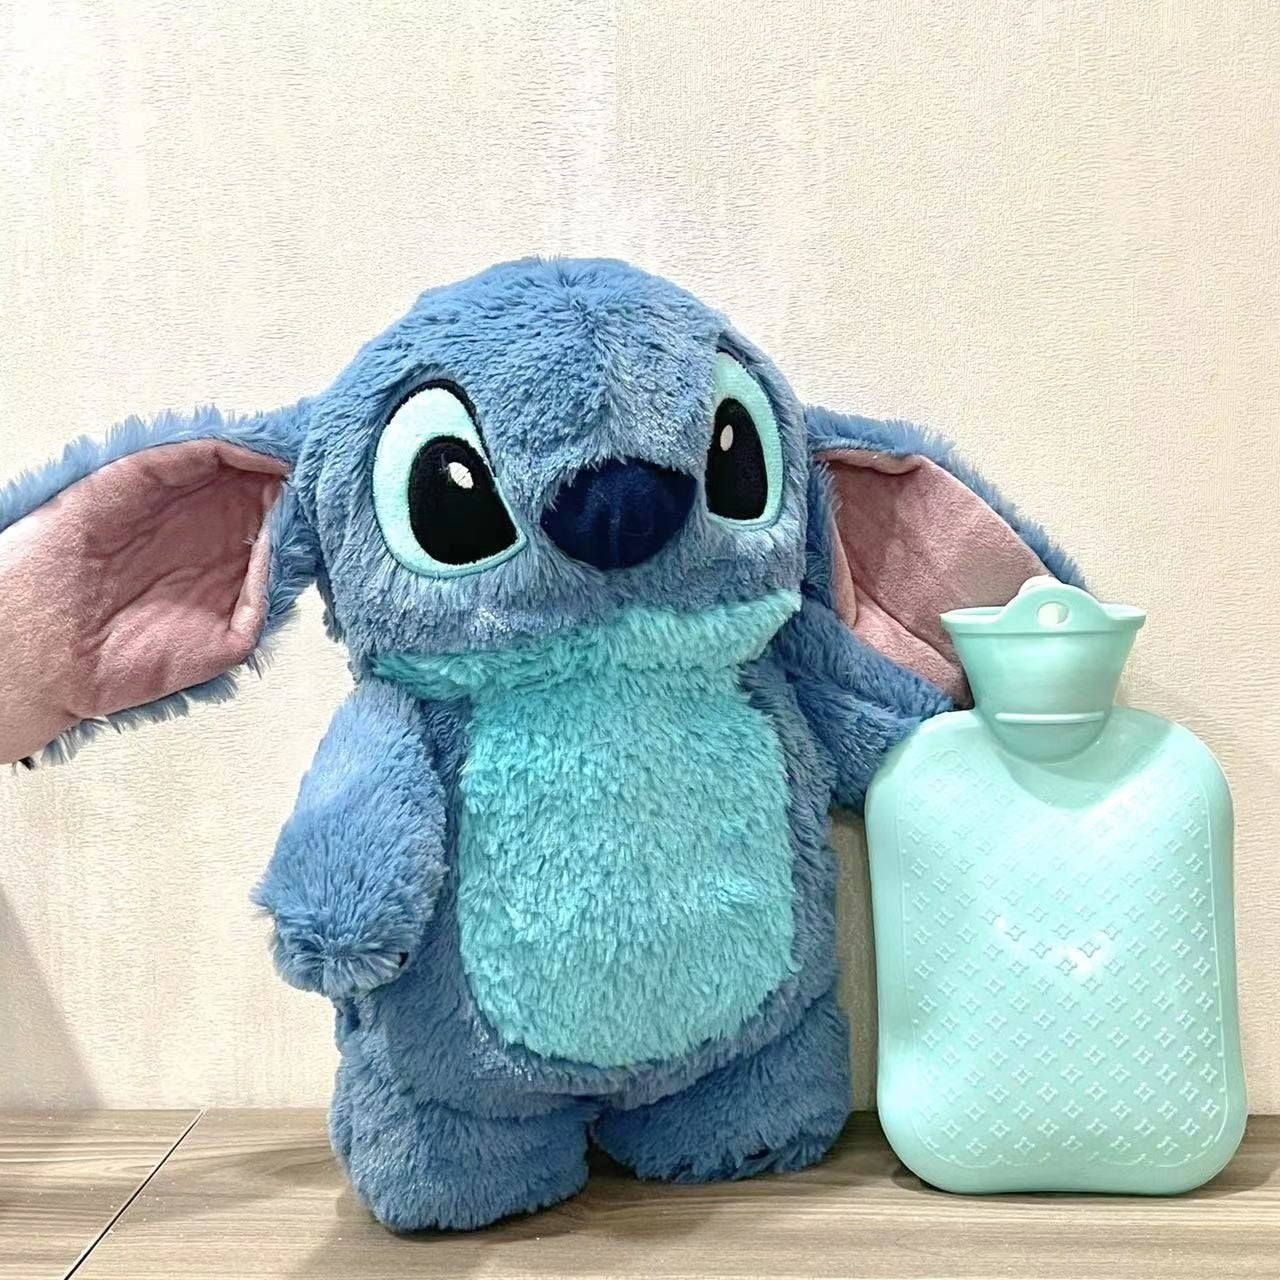 Bolsa de agua caliente Stitch Disney – PeluchMania